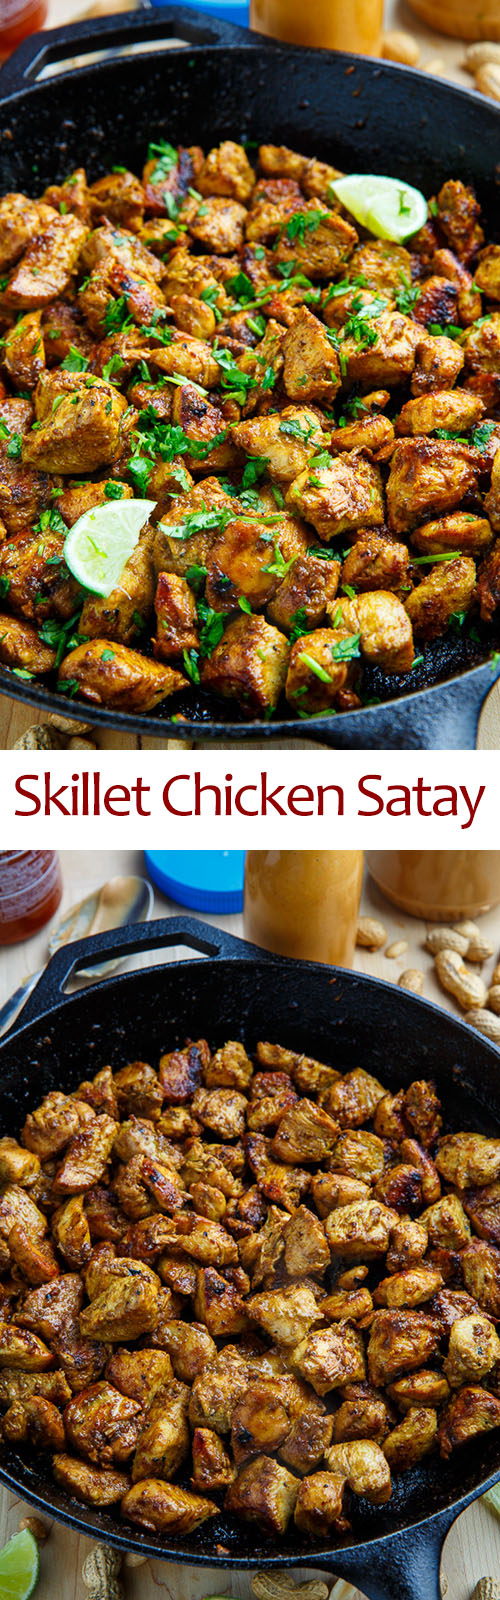 Skillet Chicken Satay